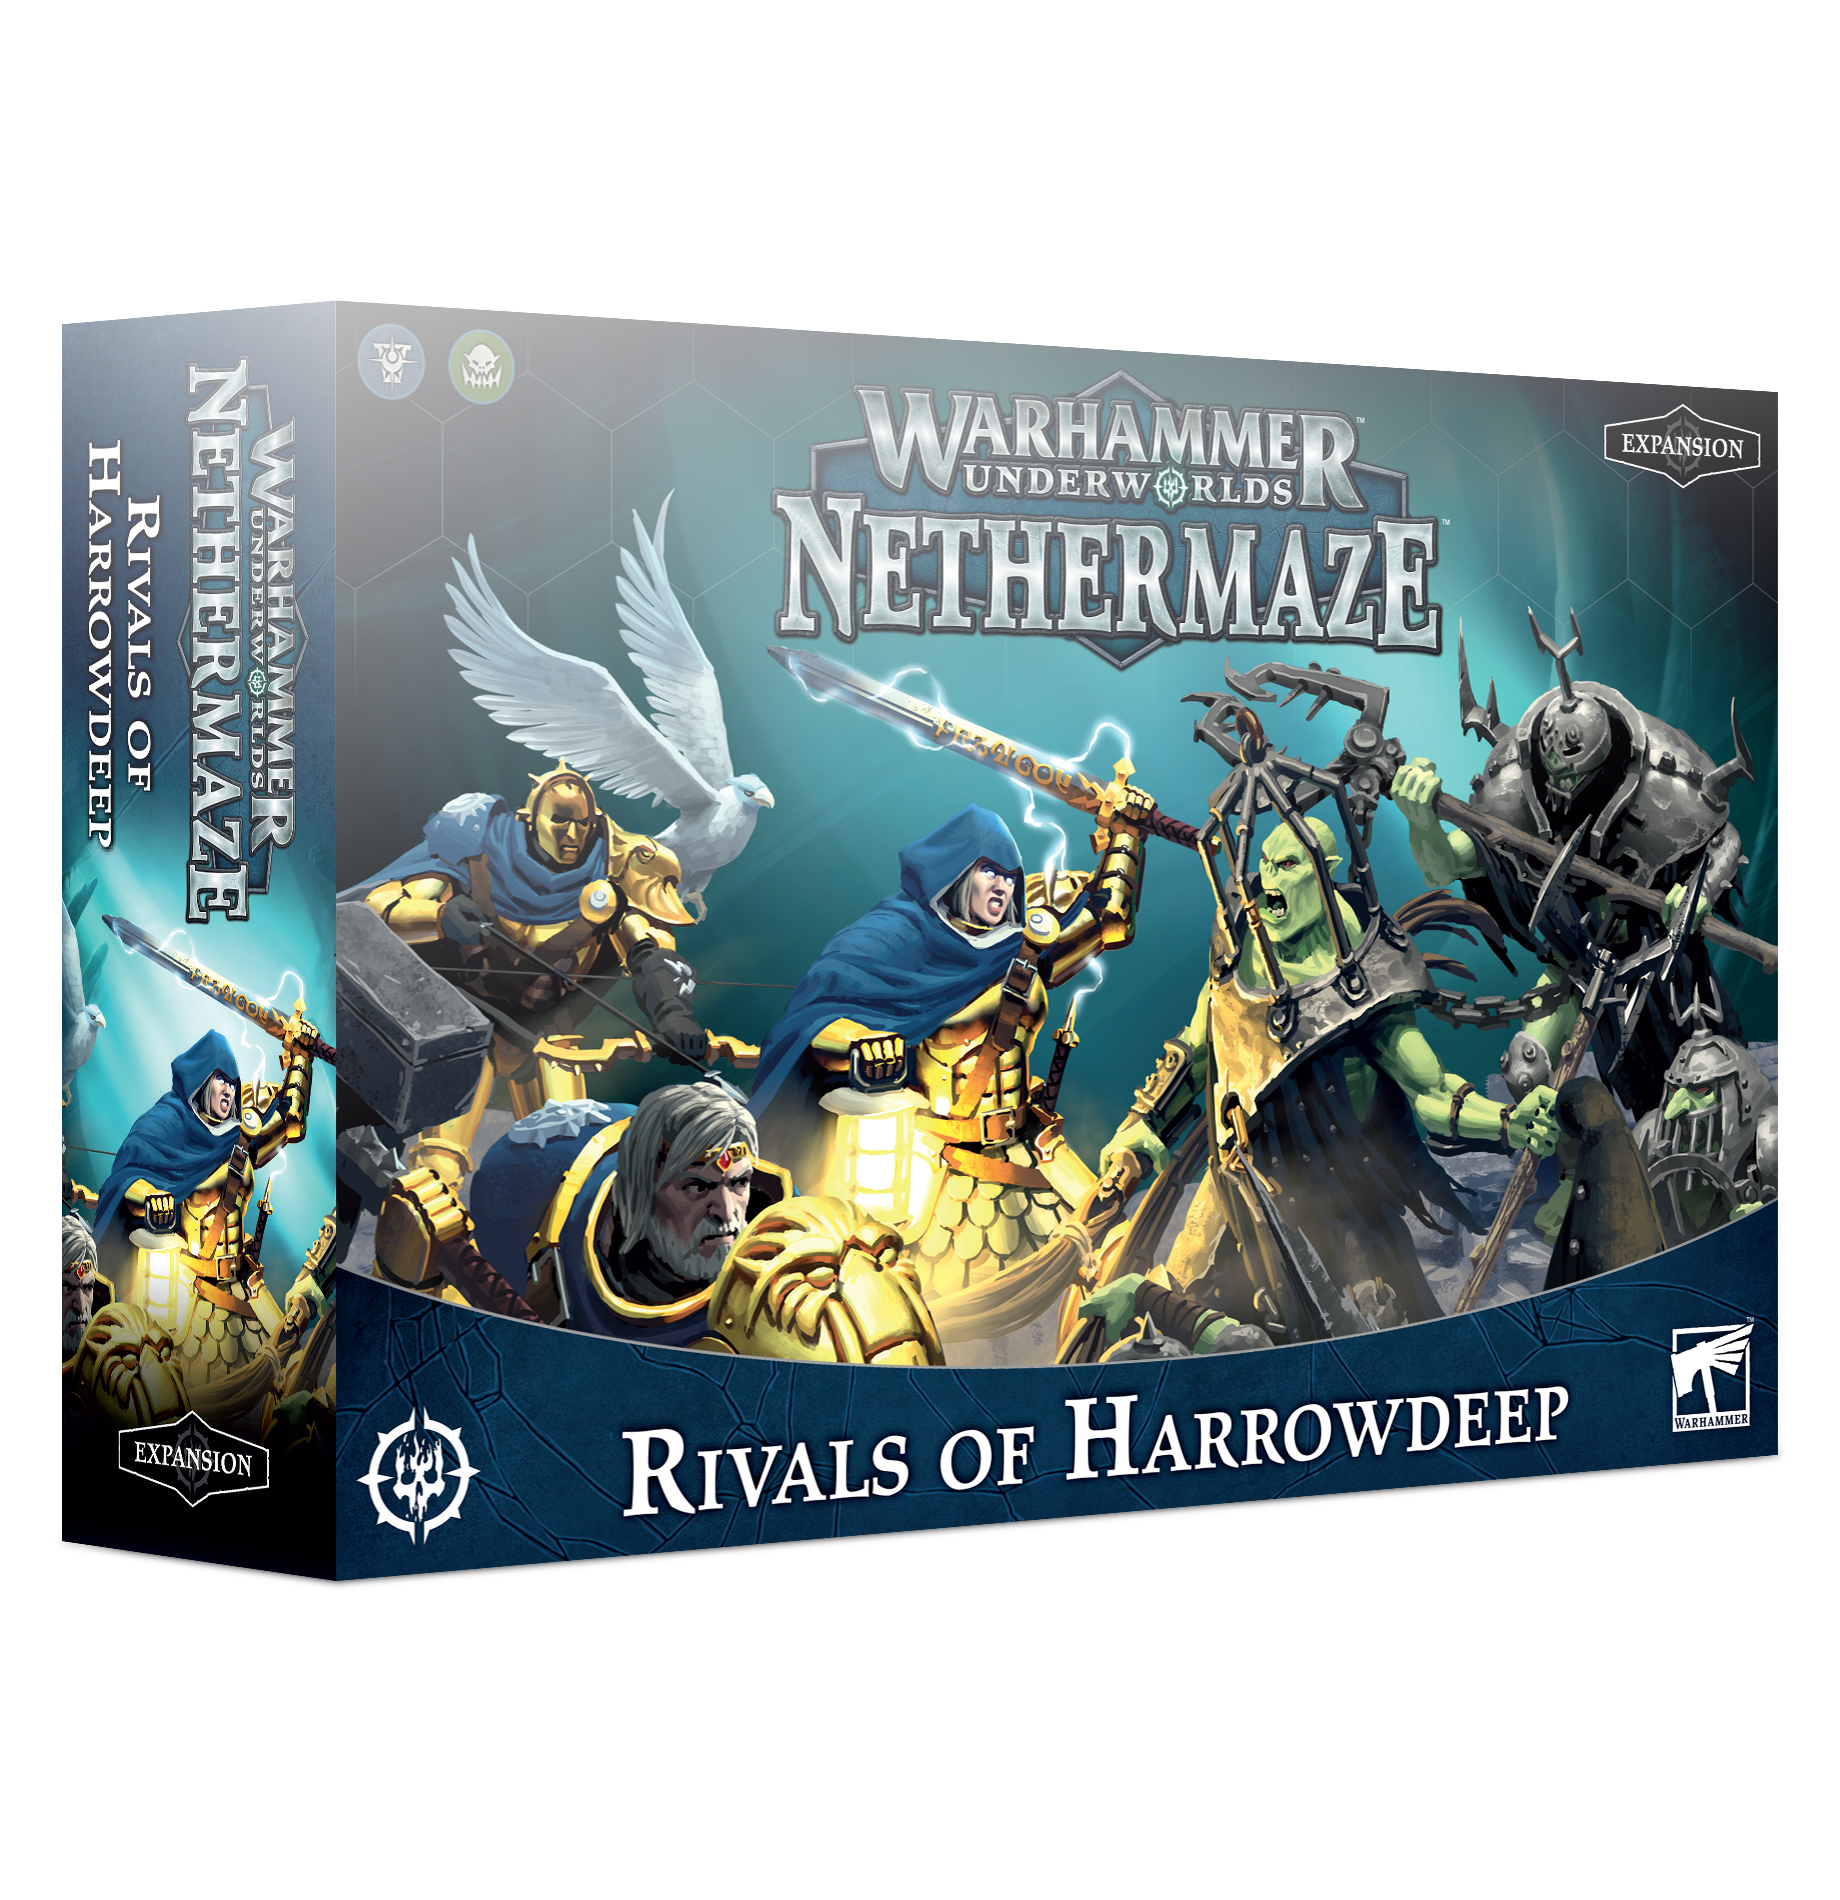 Warhammer Underworlds: Nethermaze – Rivalen von Harrowdeep